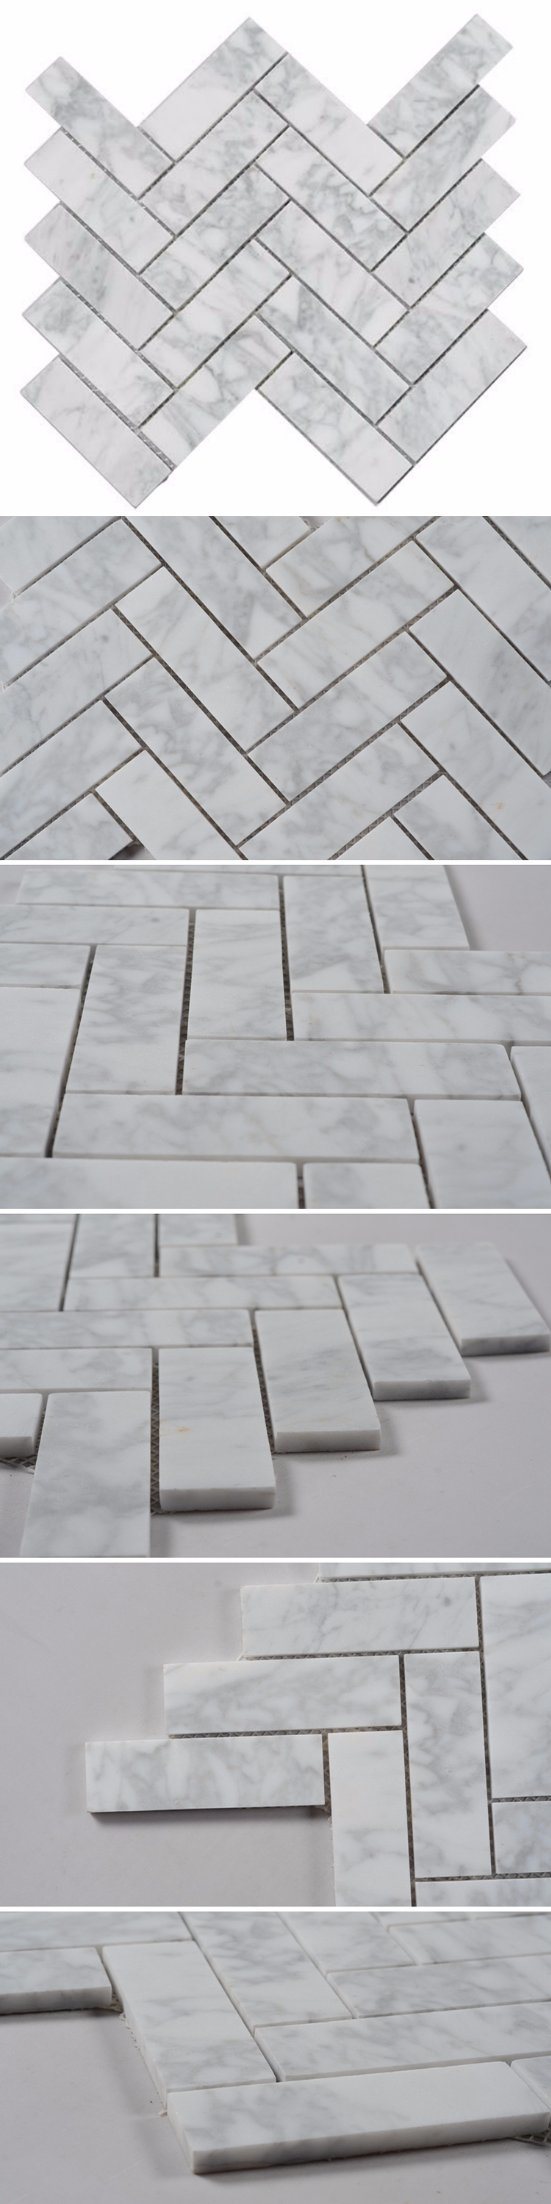 Chevron Carrara Marble Stone Tile White Marble Mosaic